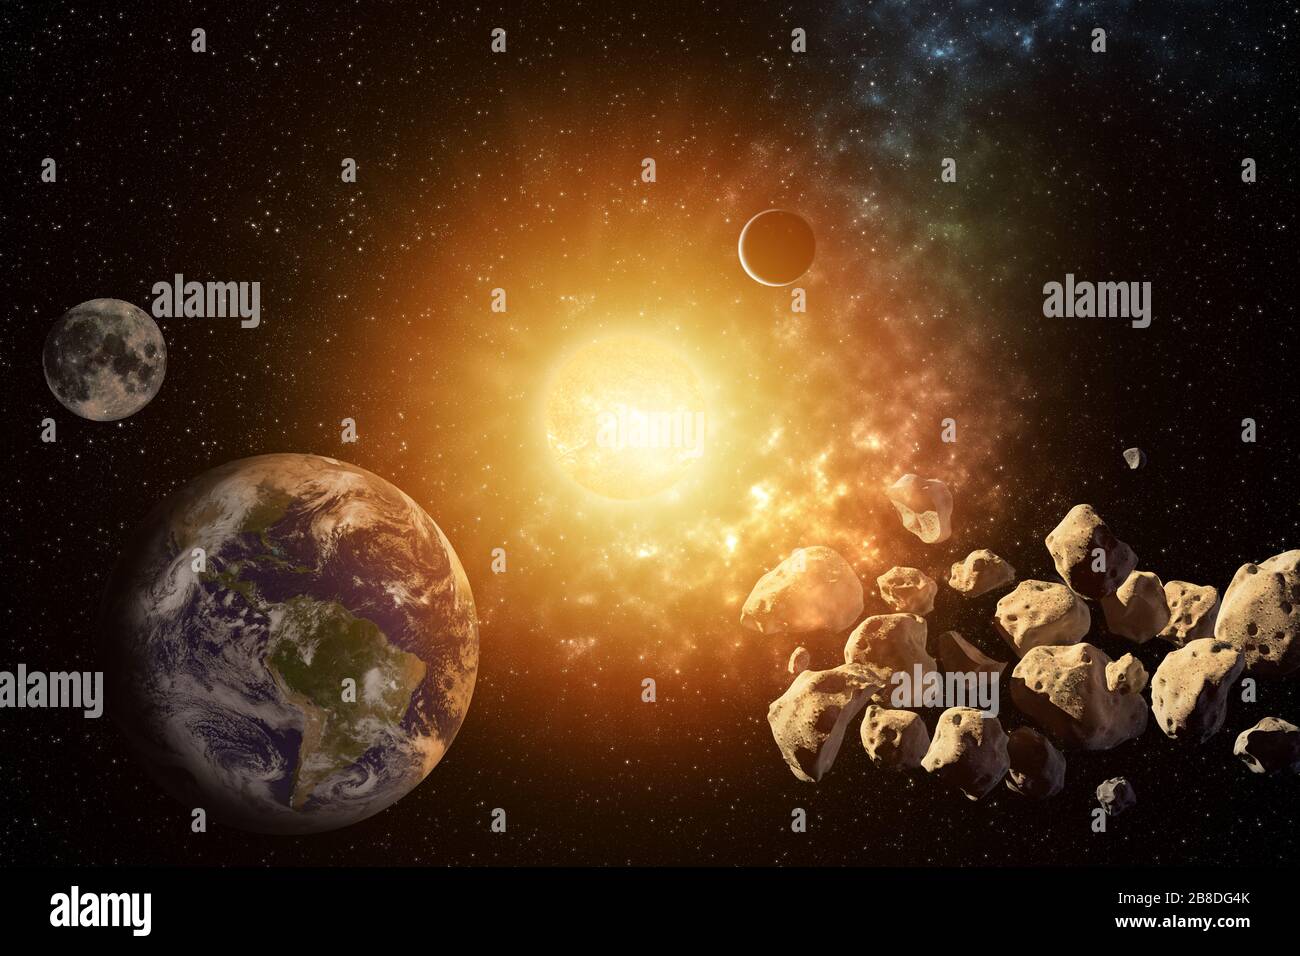 Planeten umrunden die Sonne im Sonnensystem mit Asteroiden in den farbenfrohen Sternenuniversum-Elementen dieses Bildes, das von der NASA eingerichtet wurde Stockfoto